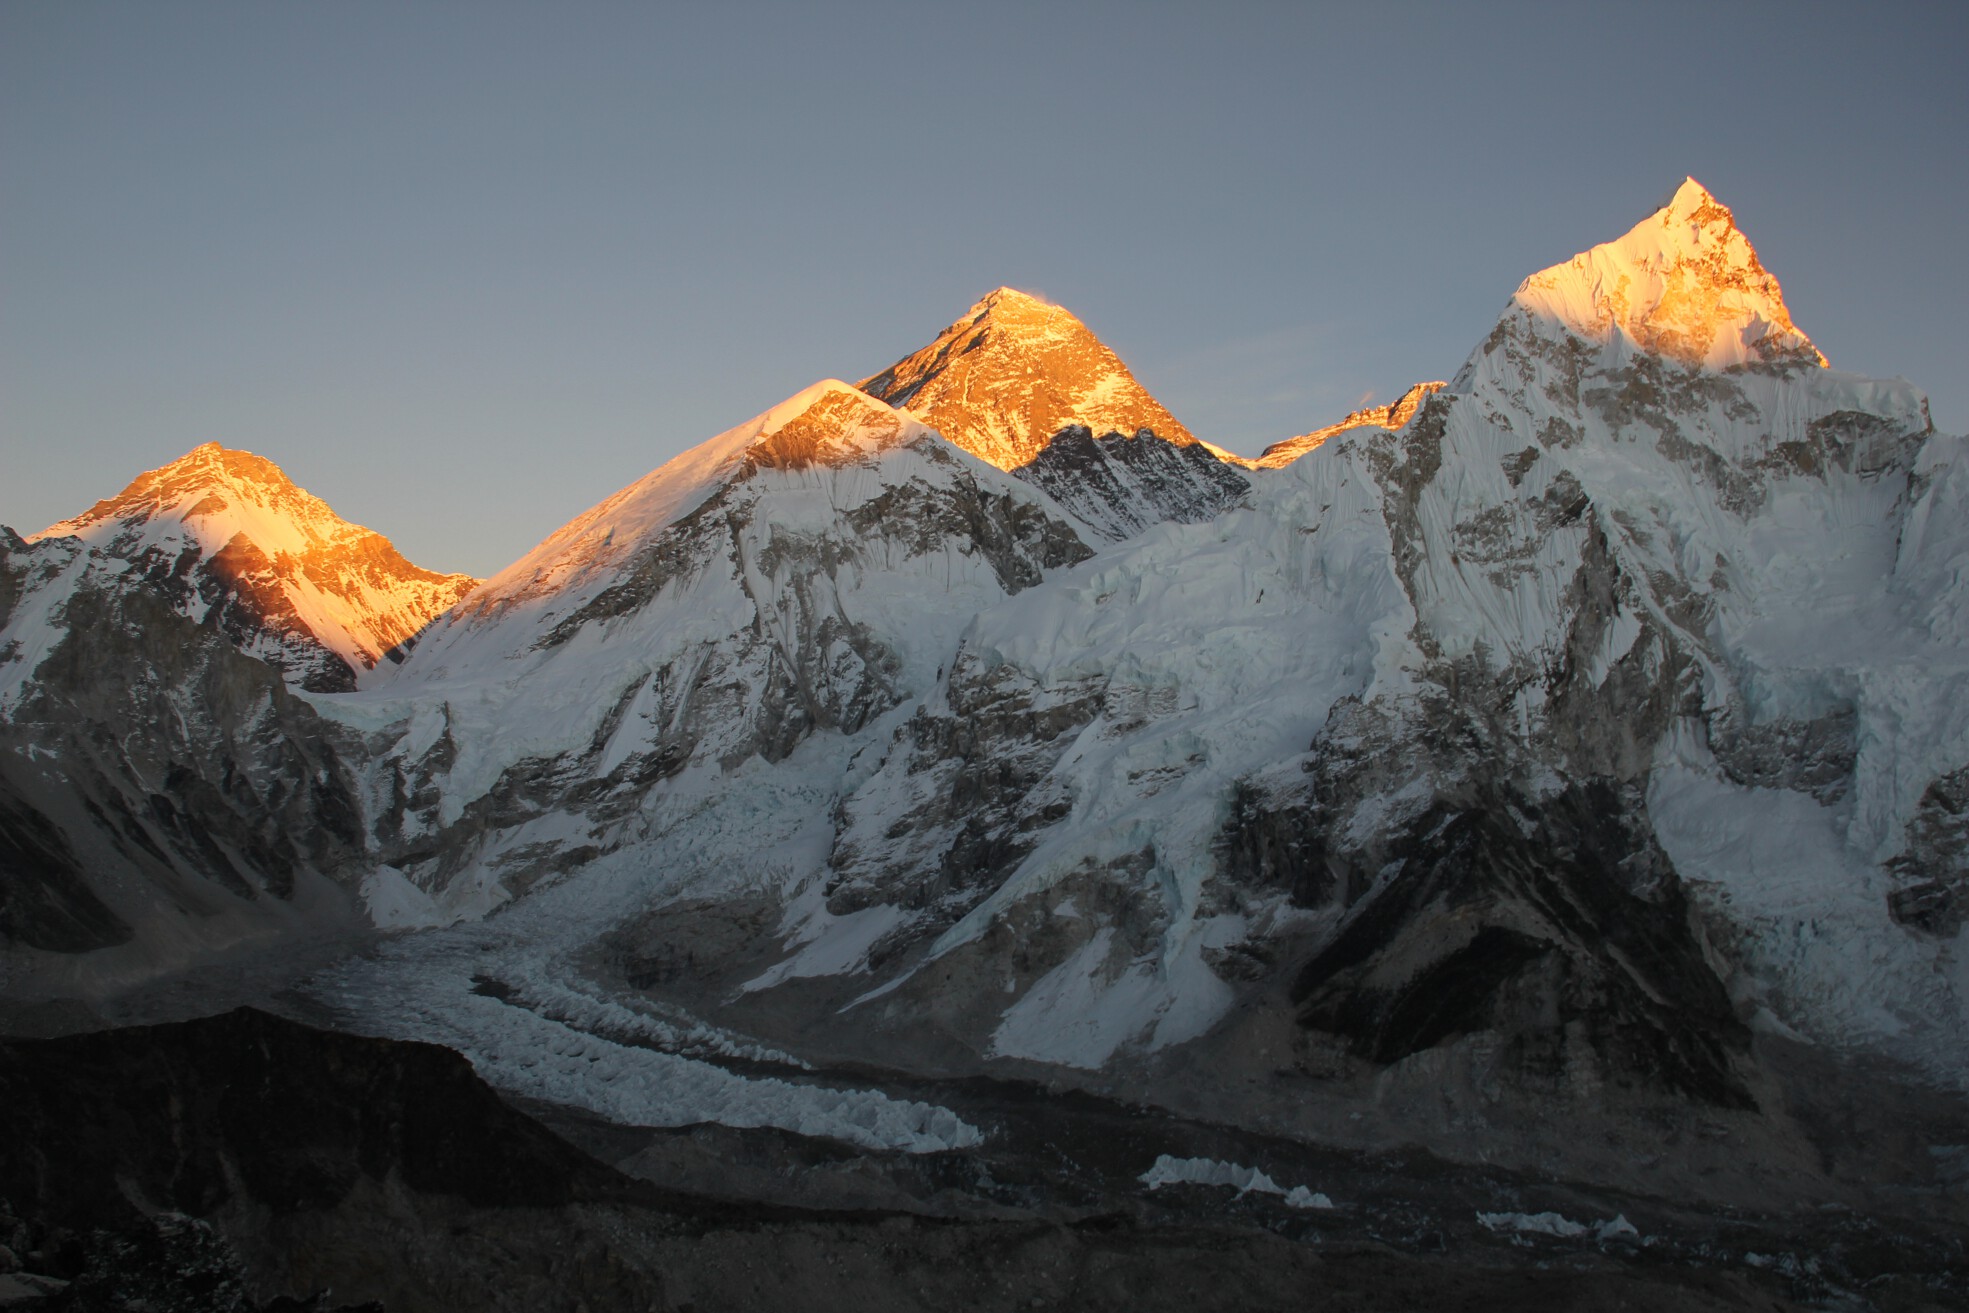 Sunlight illuminates Mount Everest during a sunset seen from Kala Patthar, Nepal.